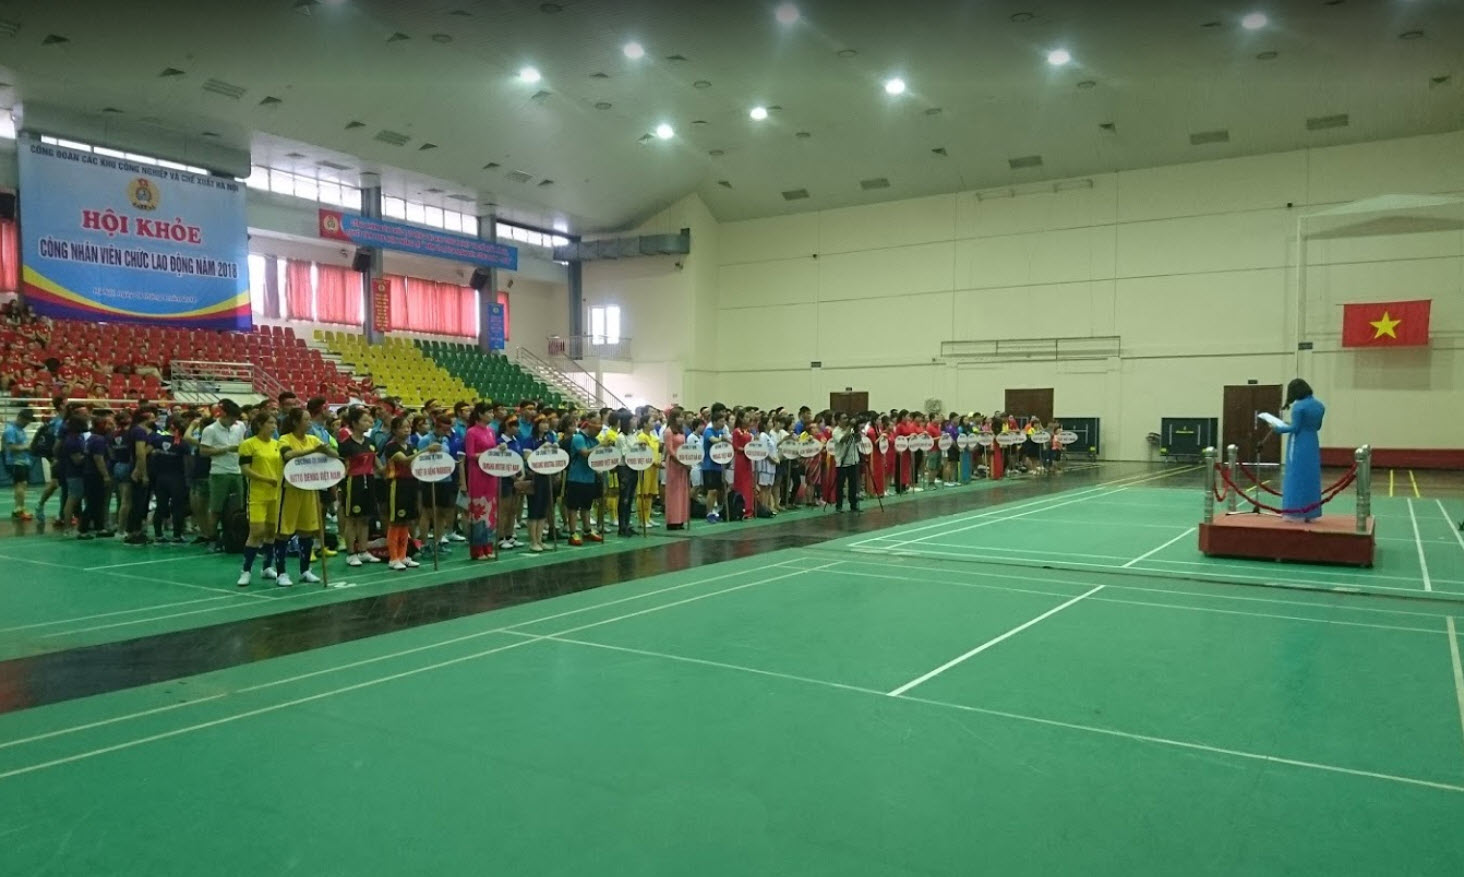 Sân cầu lông nhà thi đấu Cầu Giấy, Quận Cấu Giấy, Hà Nội